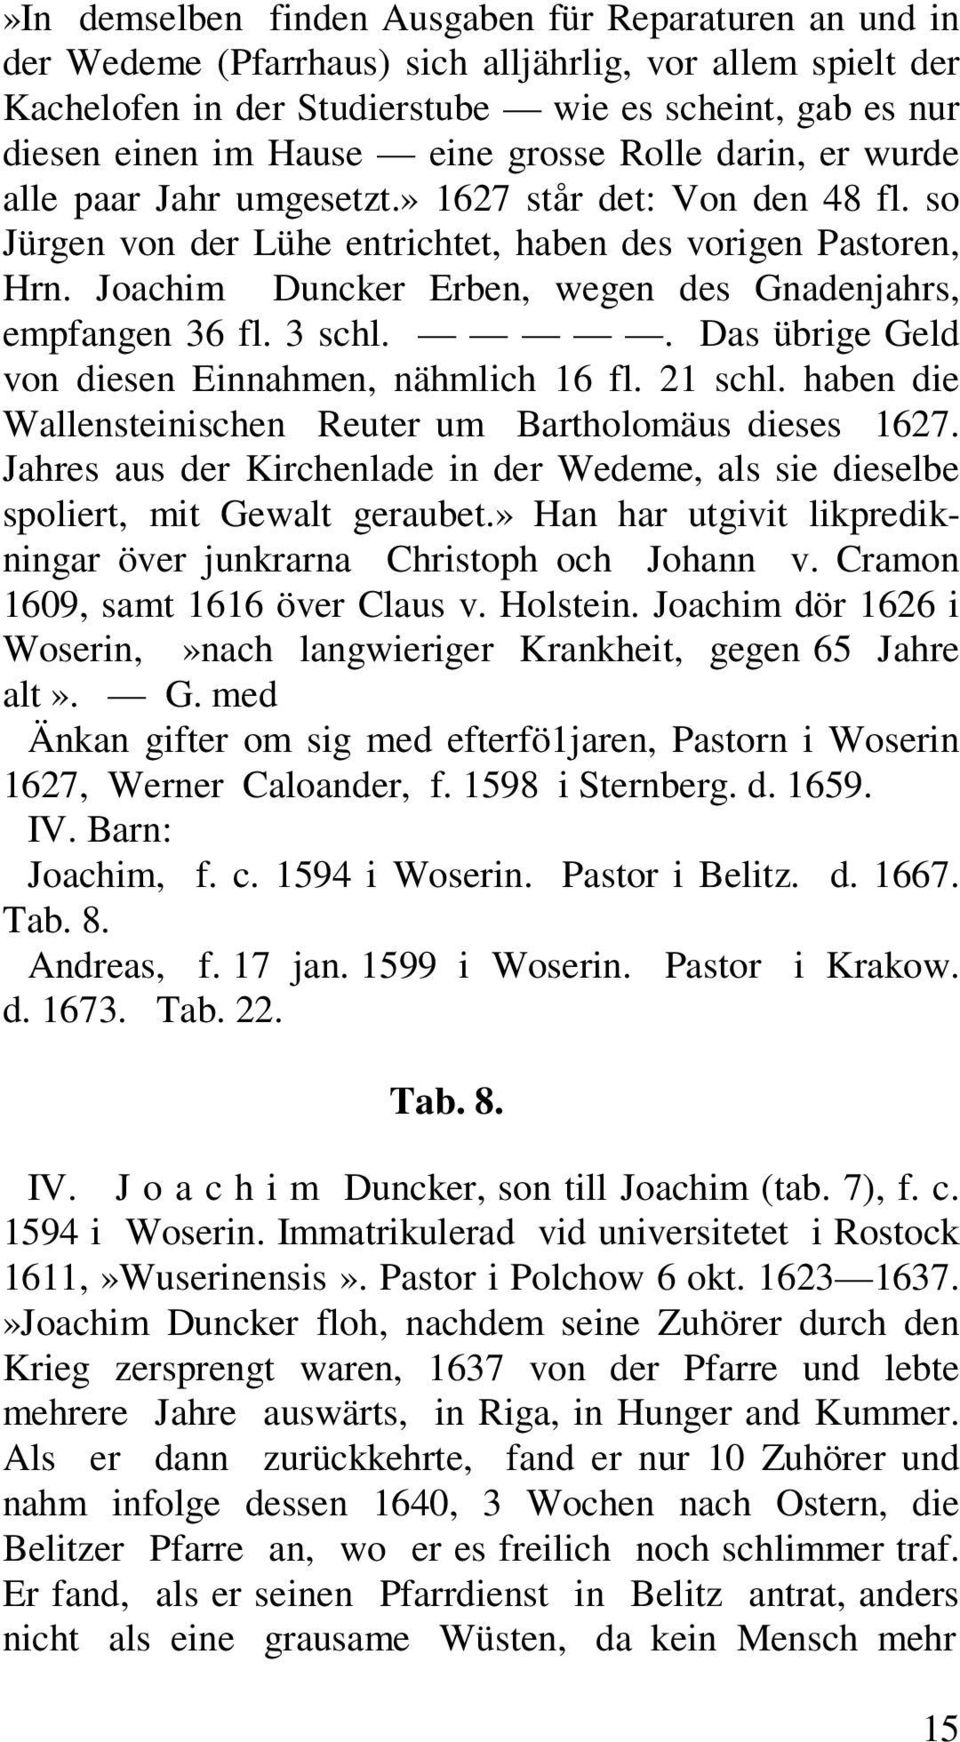 Joachim Duncker Erben, wegen des Gnadenjahrs, empfangen 36 fl. 3 schl.. Das übrige Geld von diesen Einnahmen, nähmlich 16 fl. 21 schl. haben die Wallensteinischen Reuter um Bartholomäus dieses 1627.